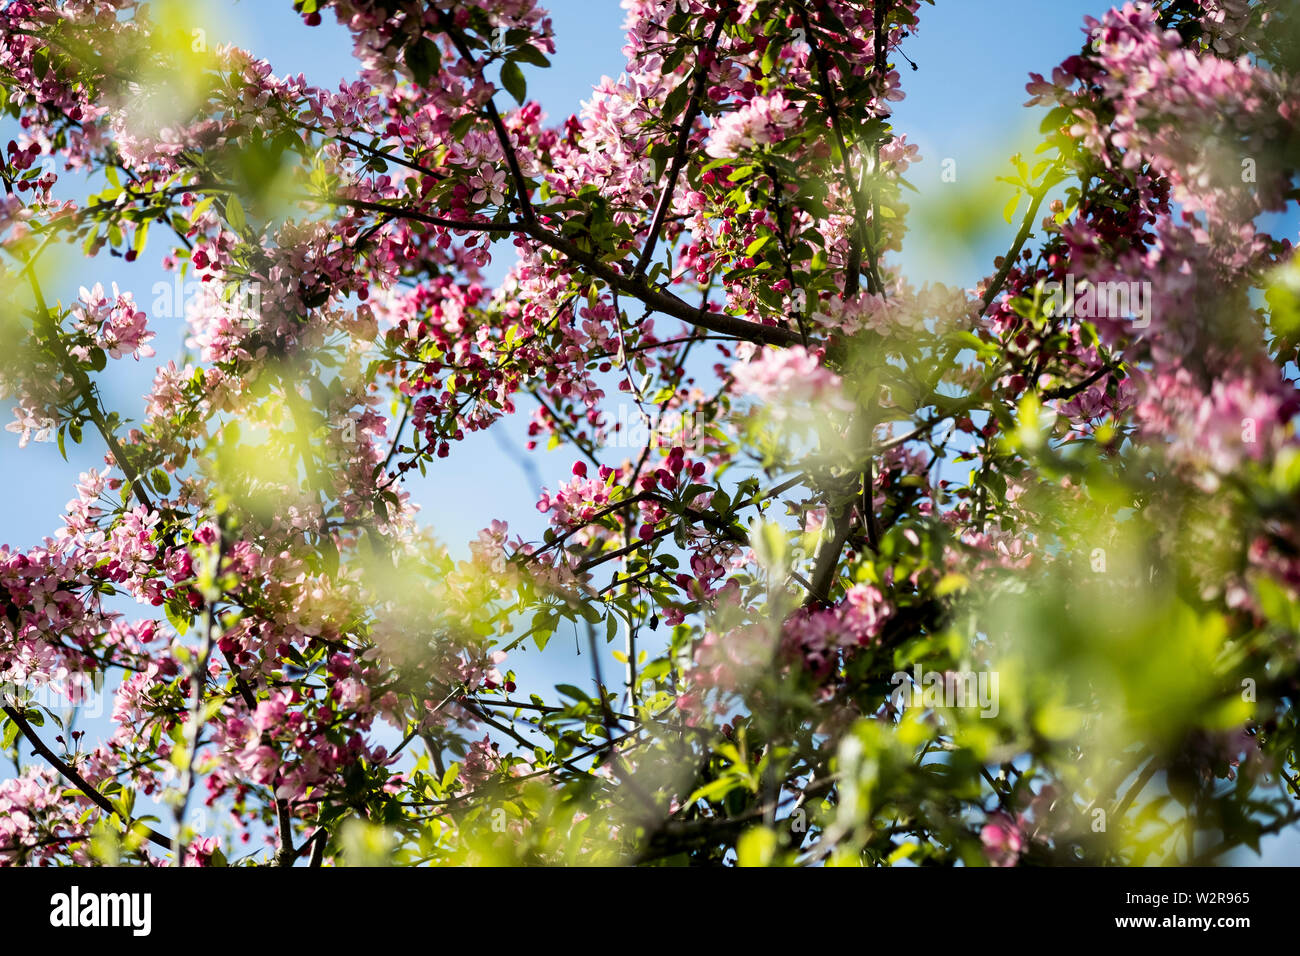 In der Nähe von Obst Zweige mit einer Fülle von rosa und weißen Blüten. Stockfoto